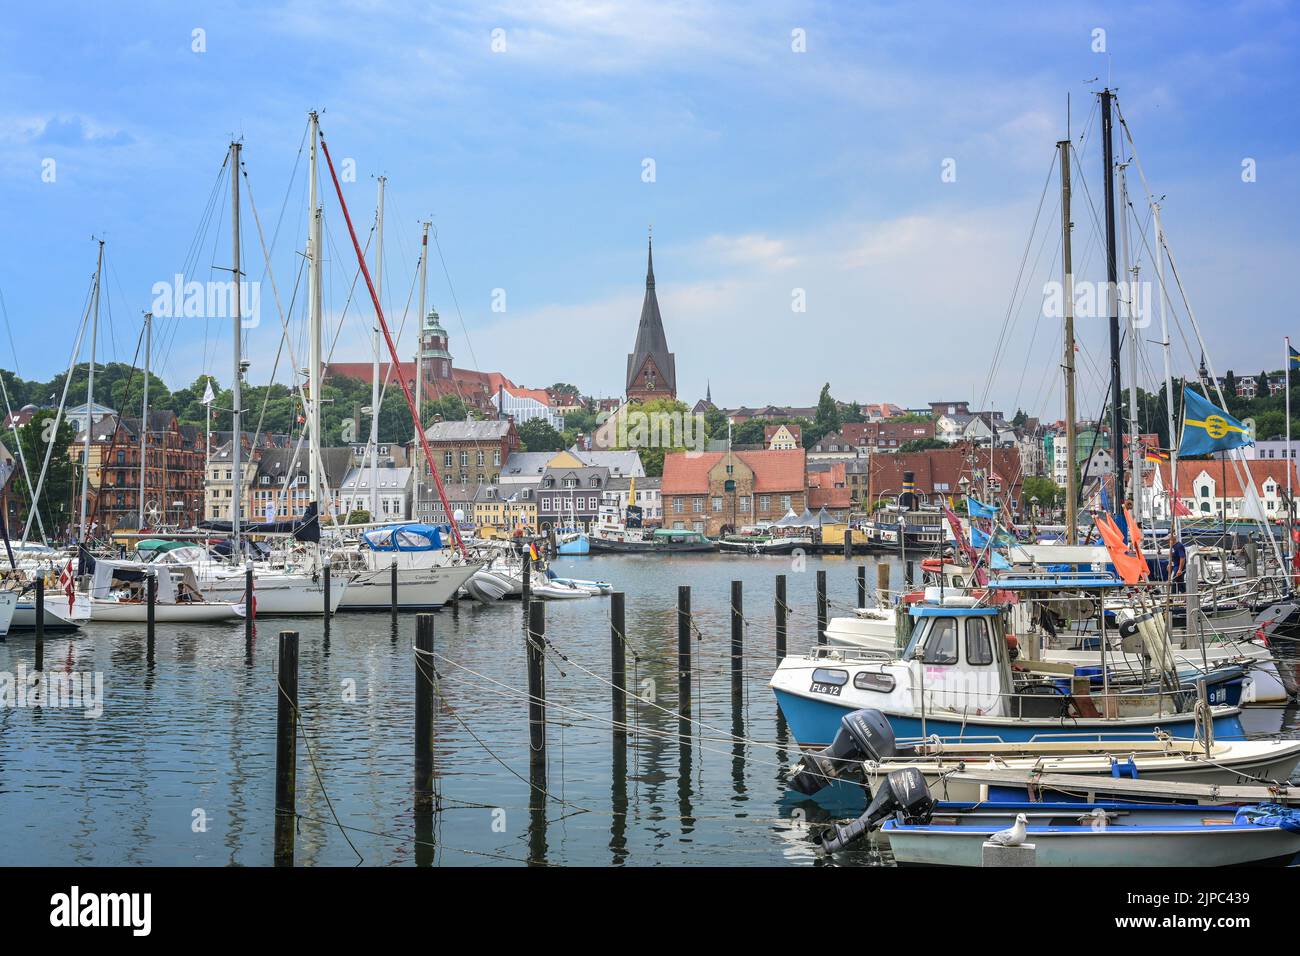 Flensburg, Germania, 25 luglio 2022: Città vecchia con chiesa di San Mariano dietro il porto yacht con barche a vela, al fiordo sul Baltico Foto Stock